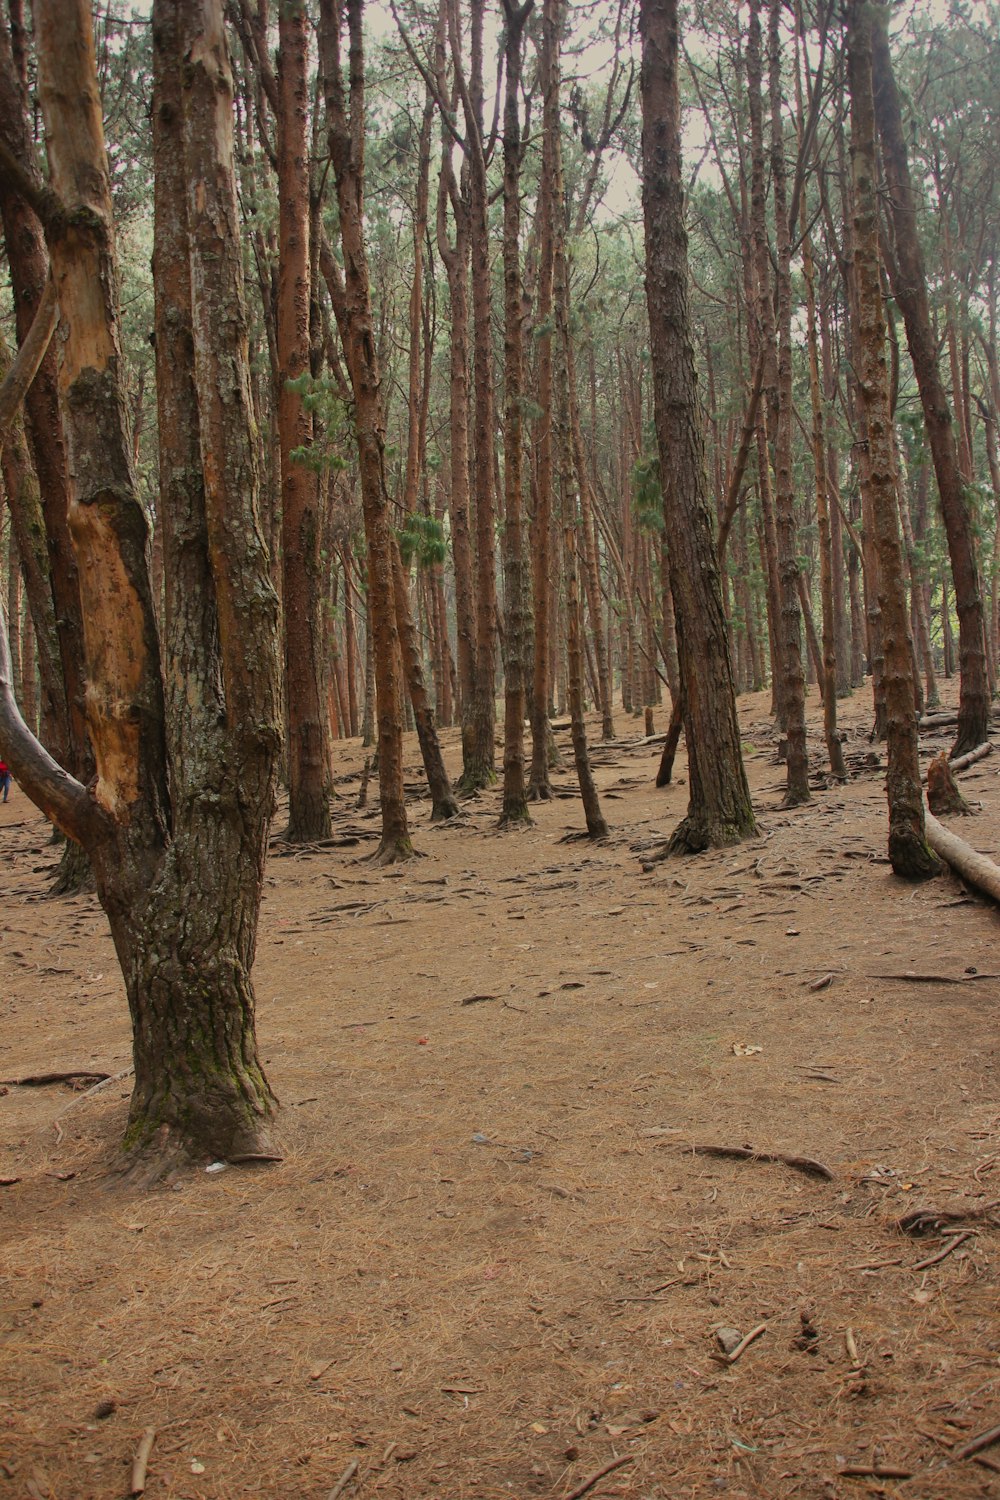 une personne debout au milieu d’une forêt